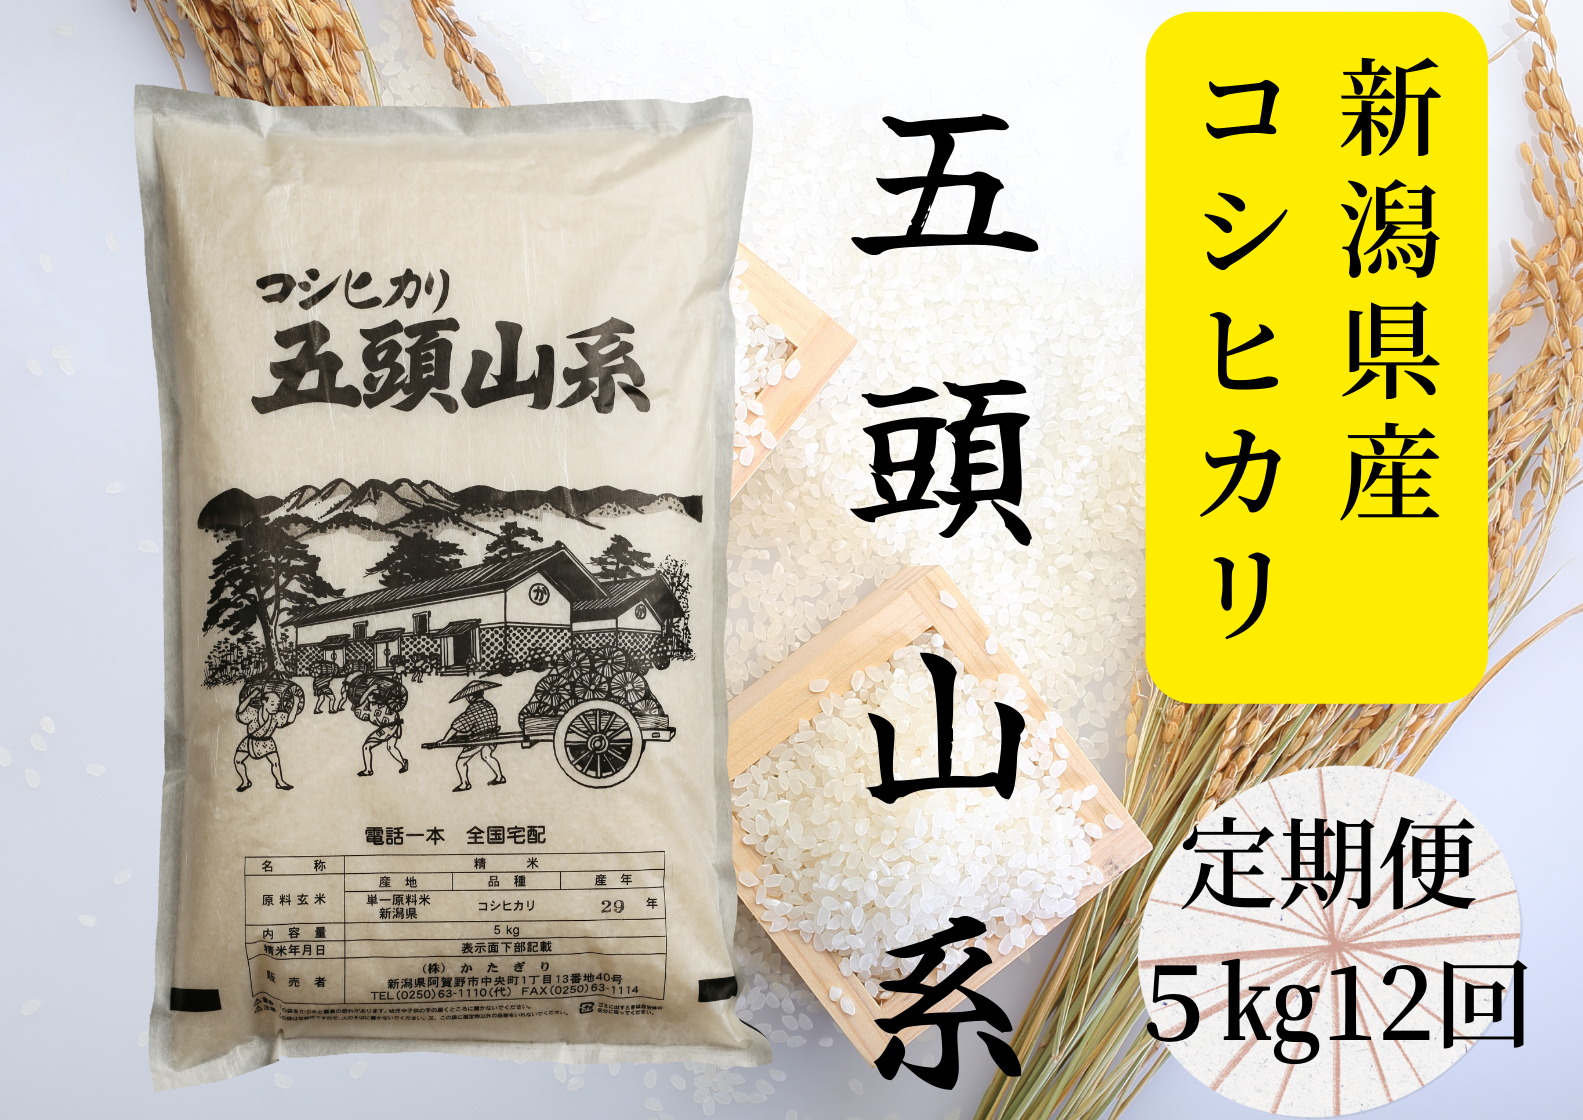 【12回定期便】「米屋のこだわり阿賀野市産」コシヒカリ5kg×12回 1E24100